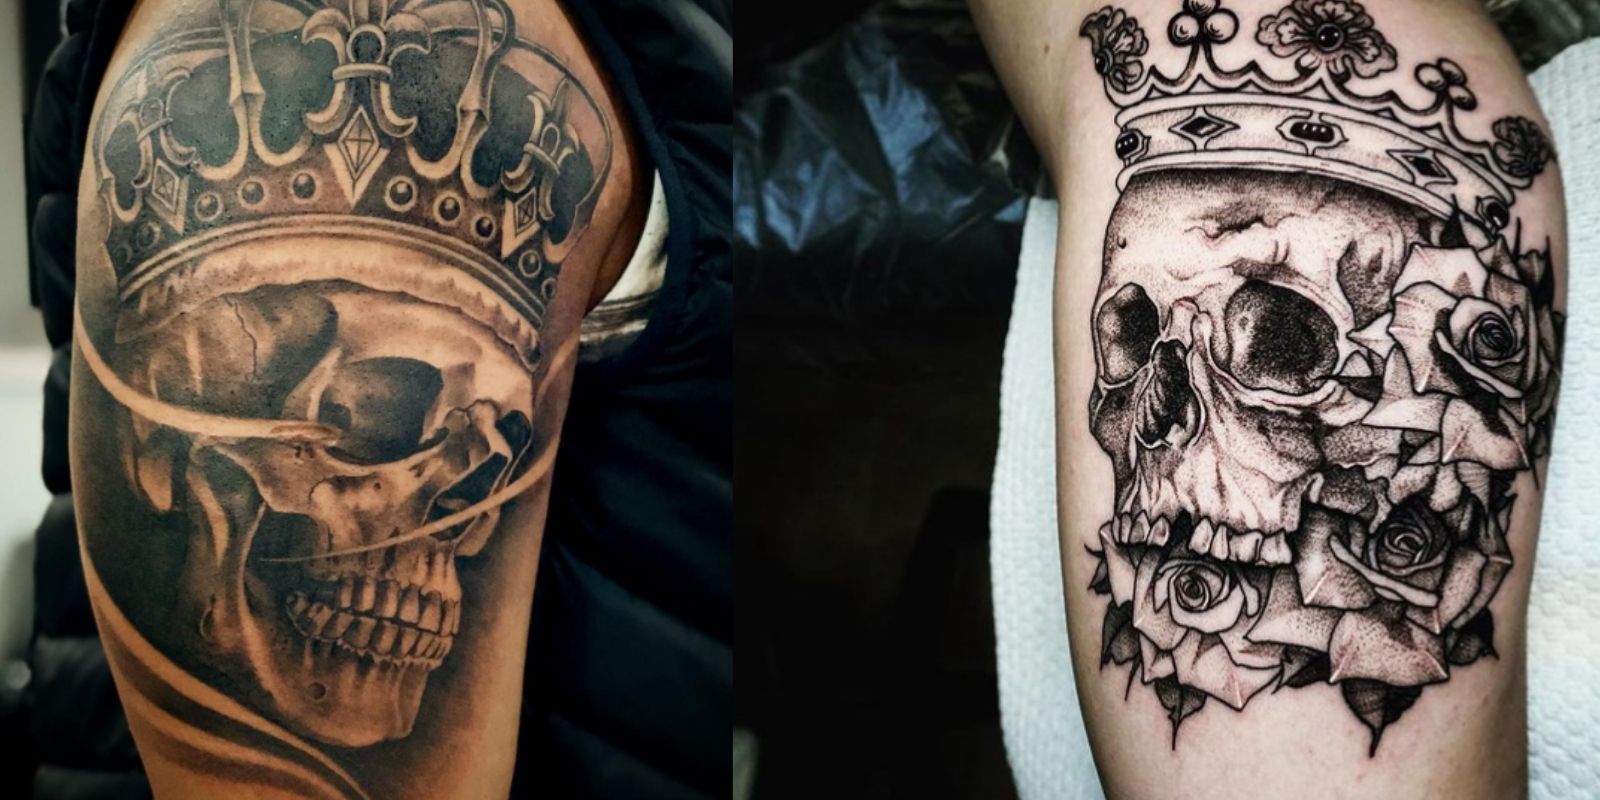 Tattoo uploaded by Mattink Tattoo  Death king skull king crown realism  blackandgrey mattinktattoo tattoo ink  Tattoodo